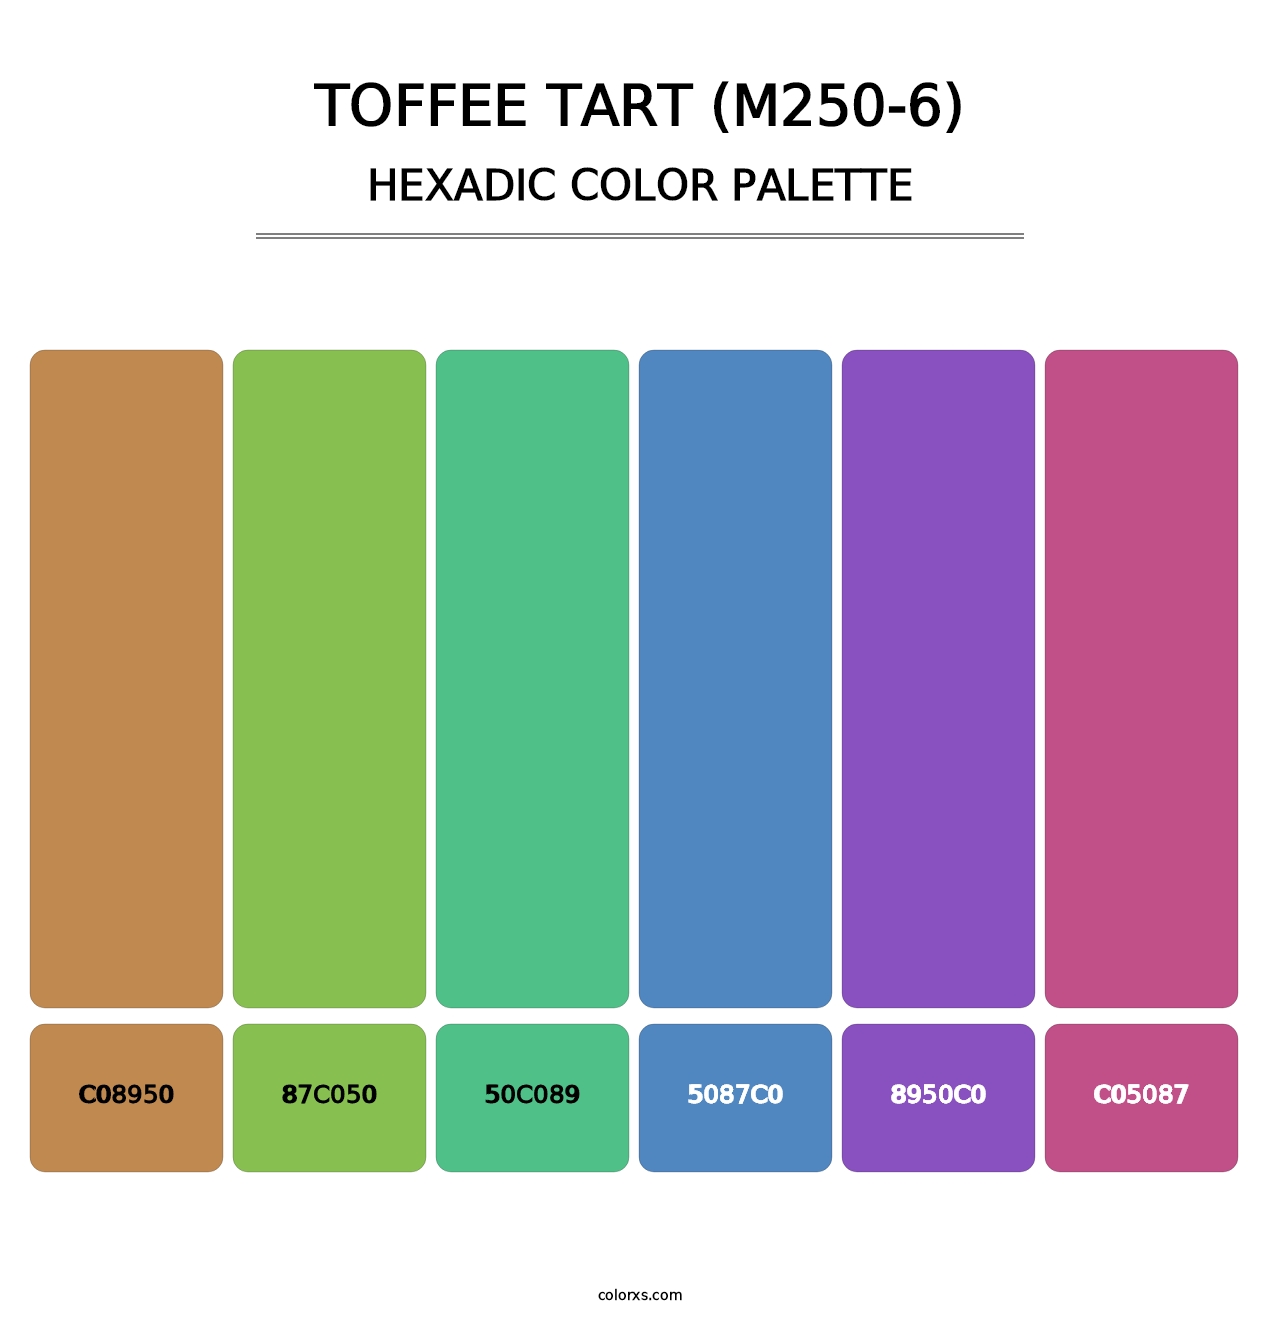 Toffee Tart (M250-6) - Hexadic Color Palette